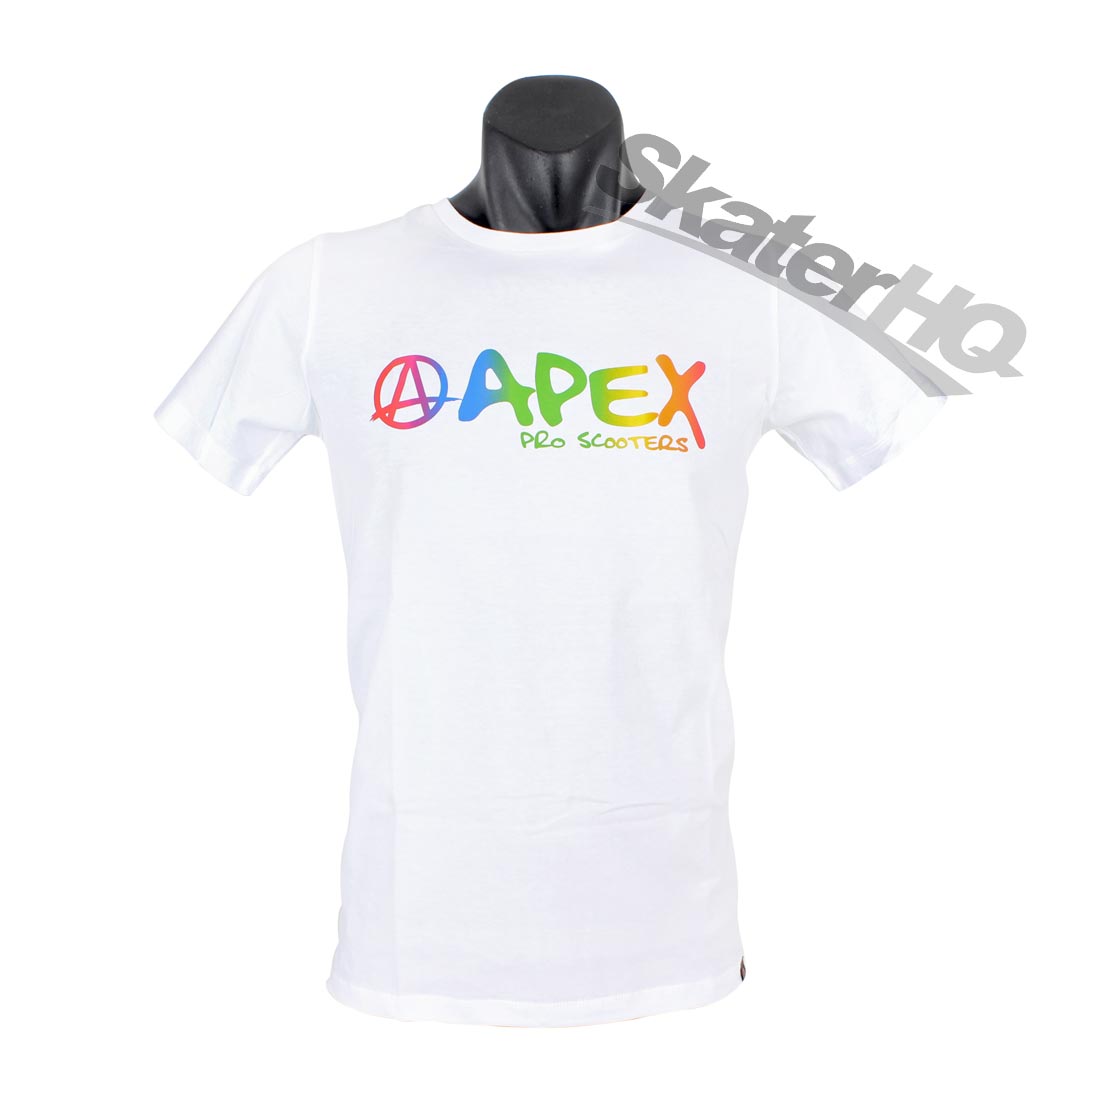 Apex Rainbow Logo T-Shirt White - Medium Apparel Tshirts